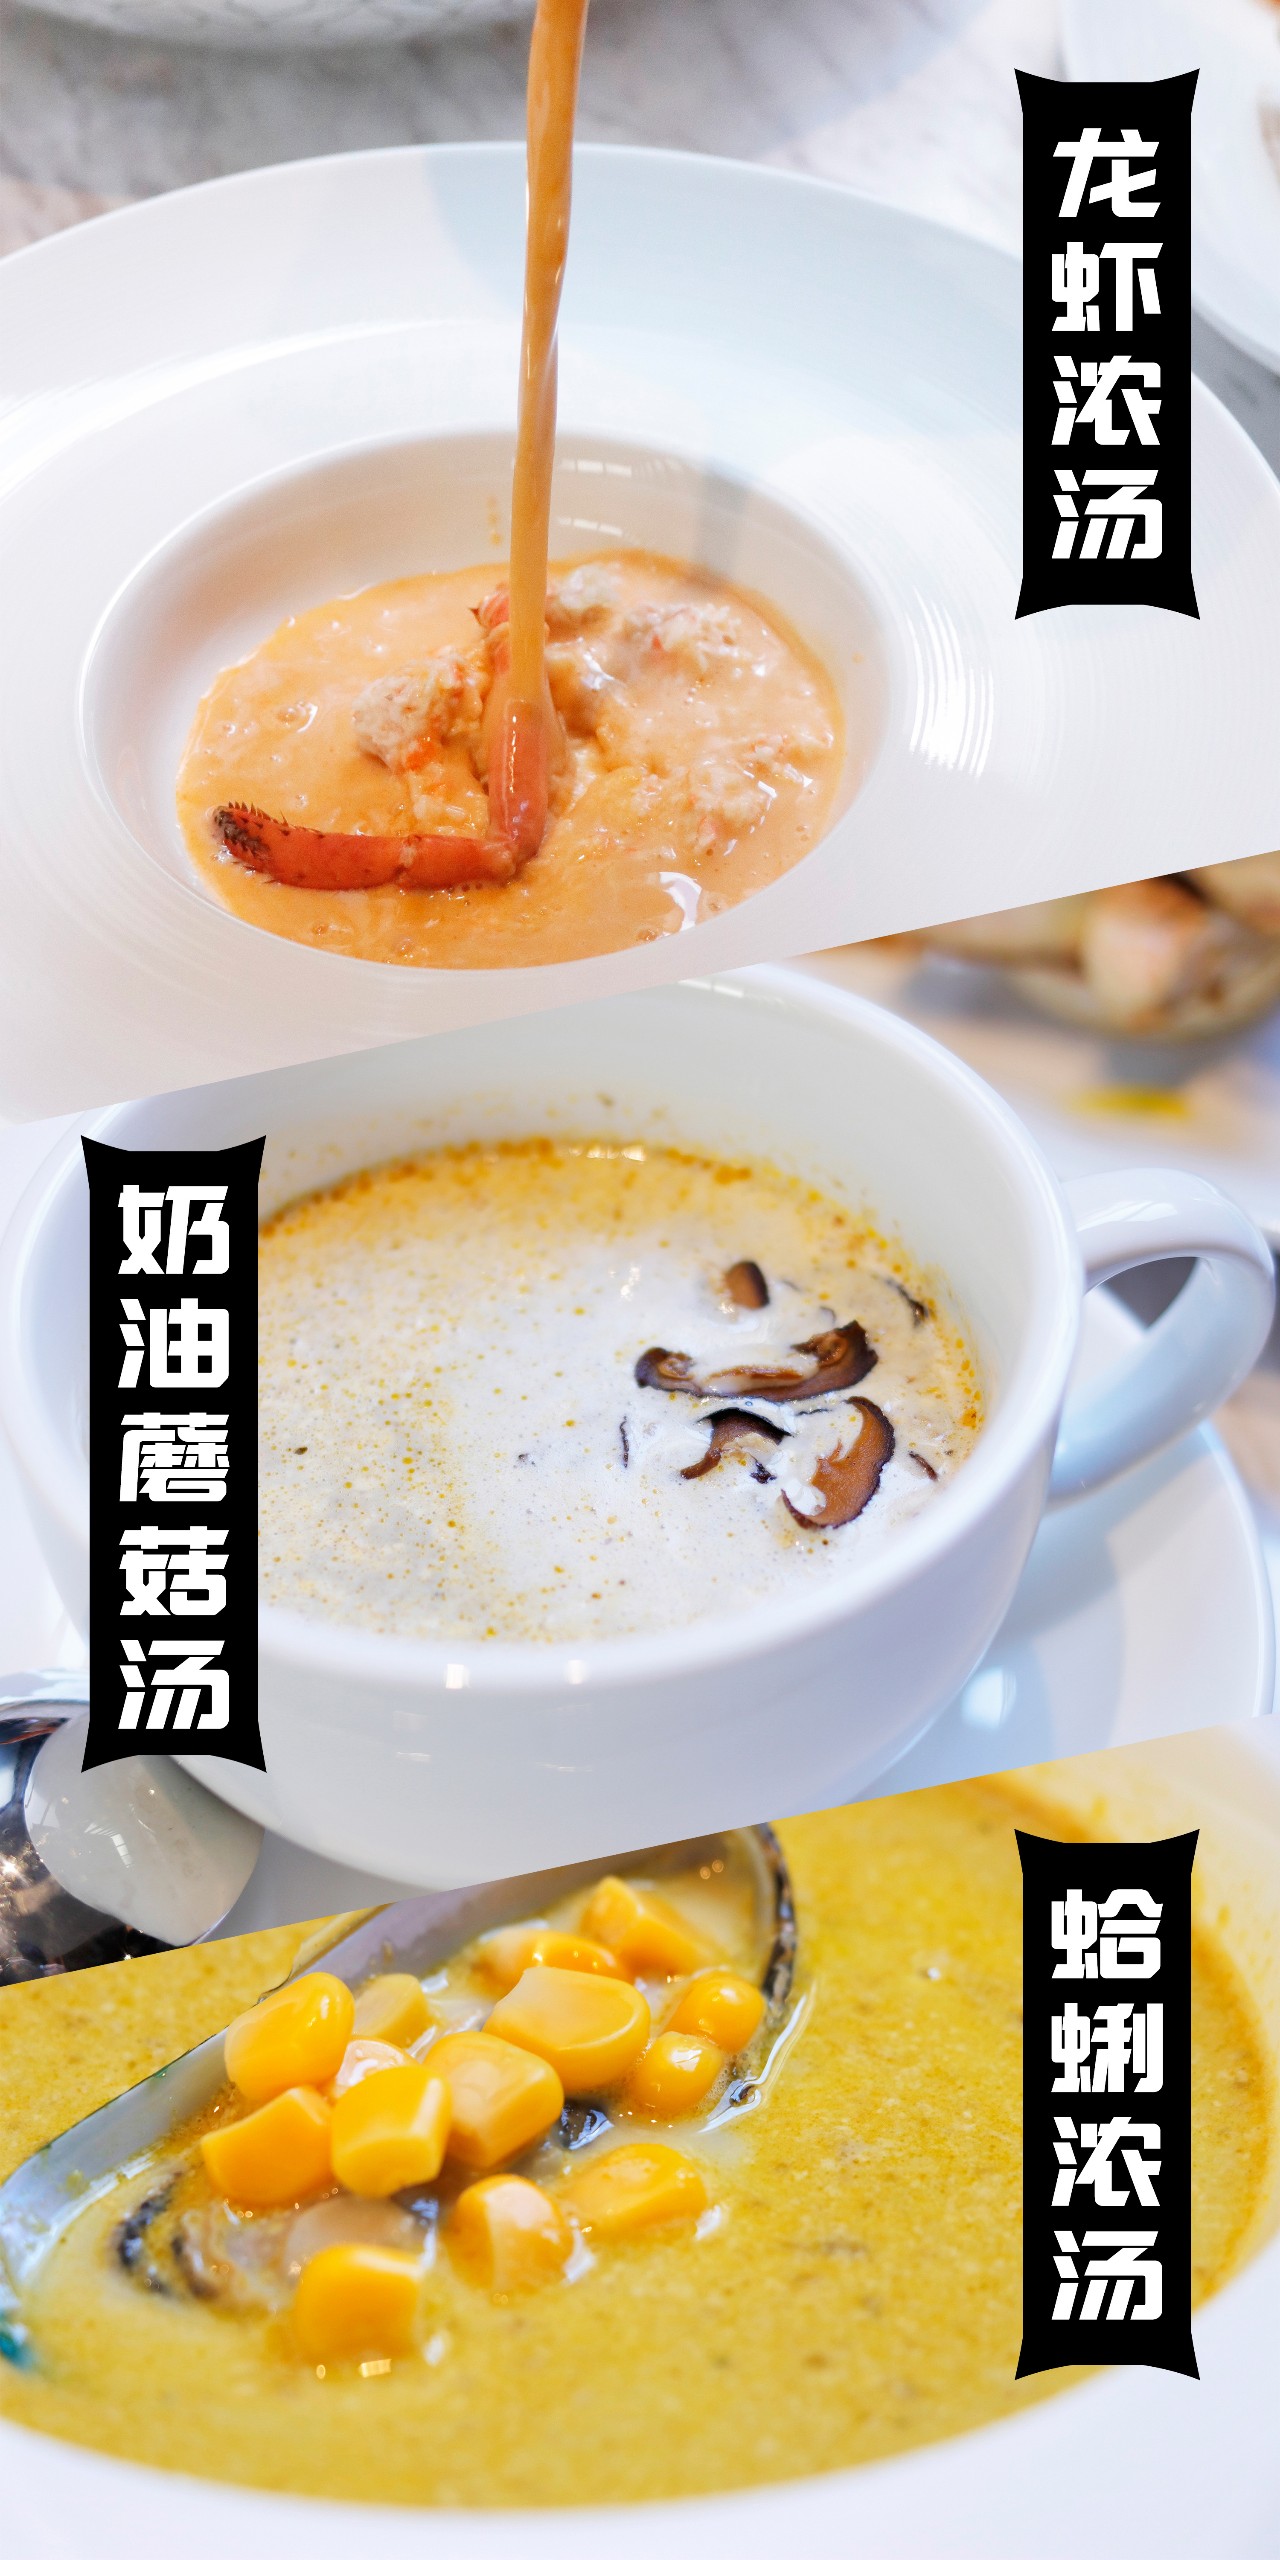 无论是奶油蘑菇例汤 感受奶油勾勒出汤的醇厚 或者是龙虾浓汤,蛤蜊